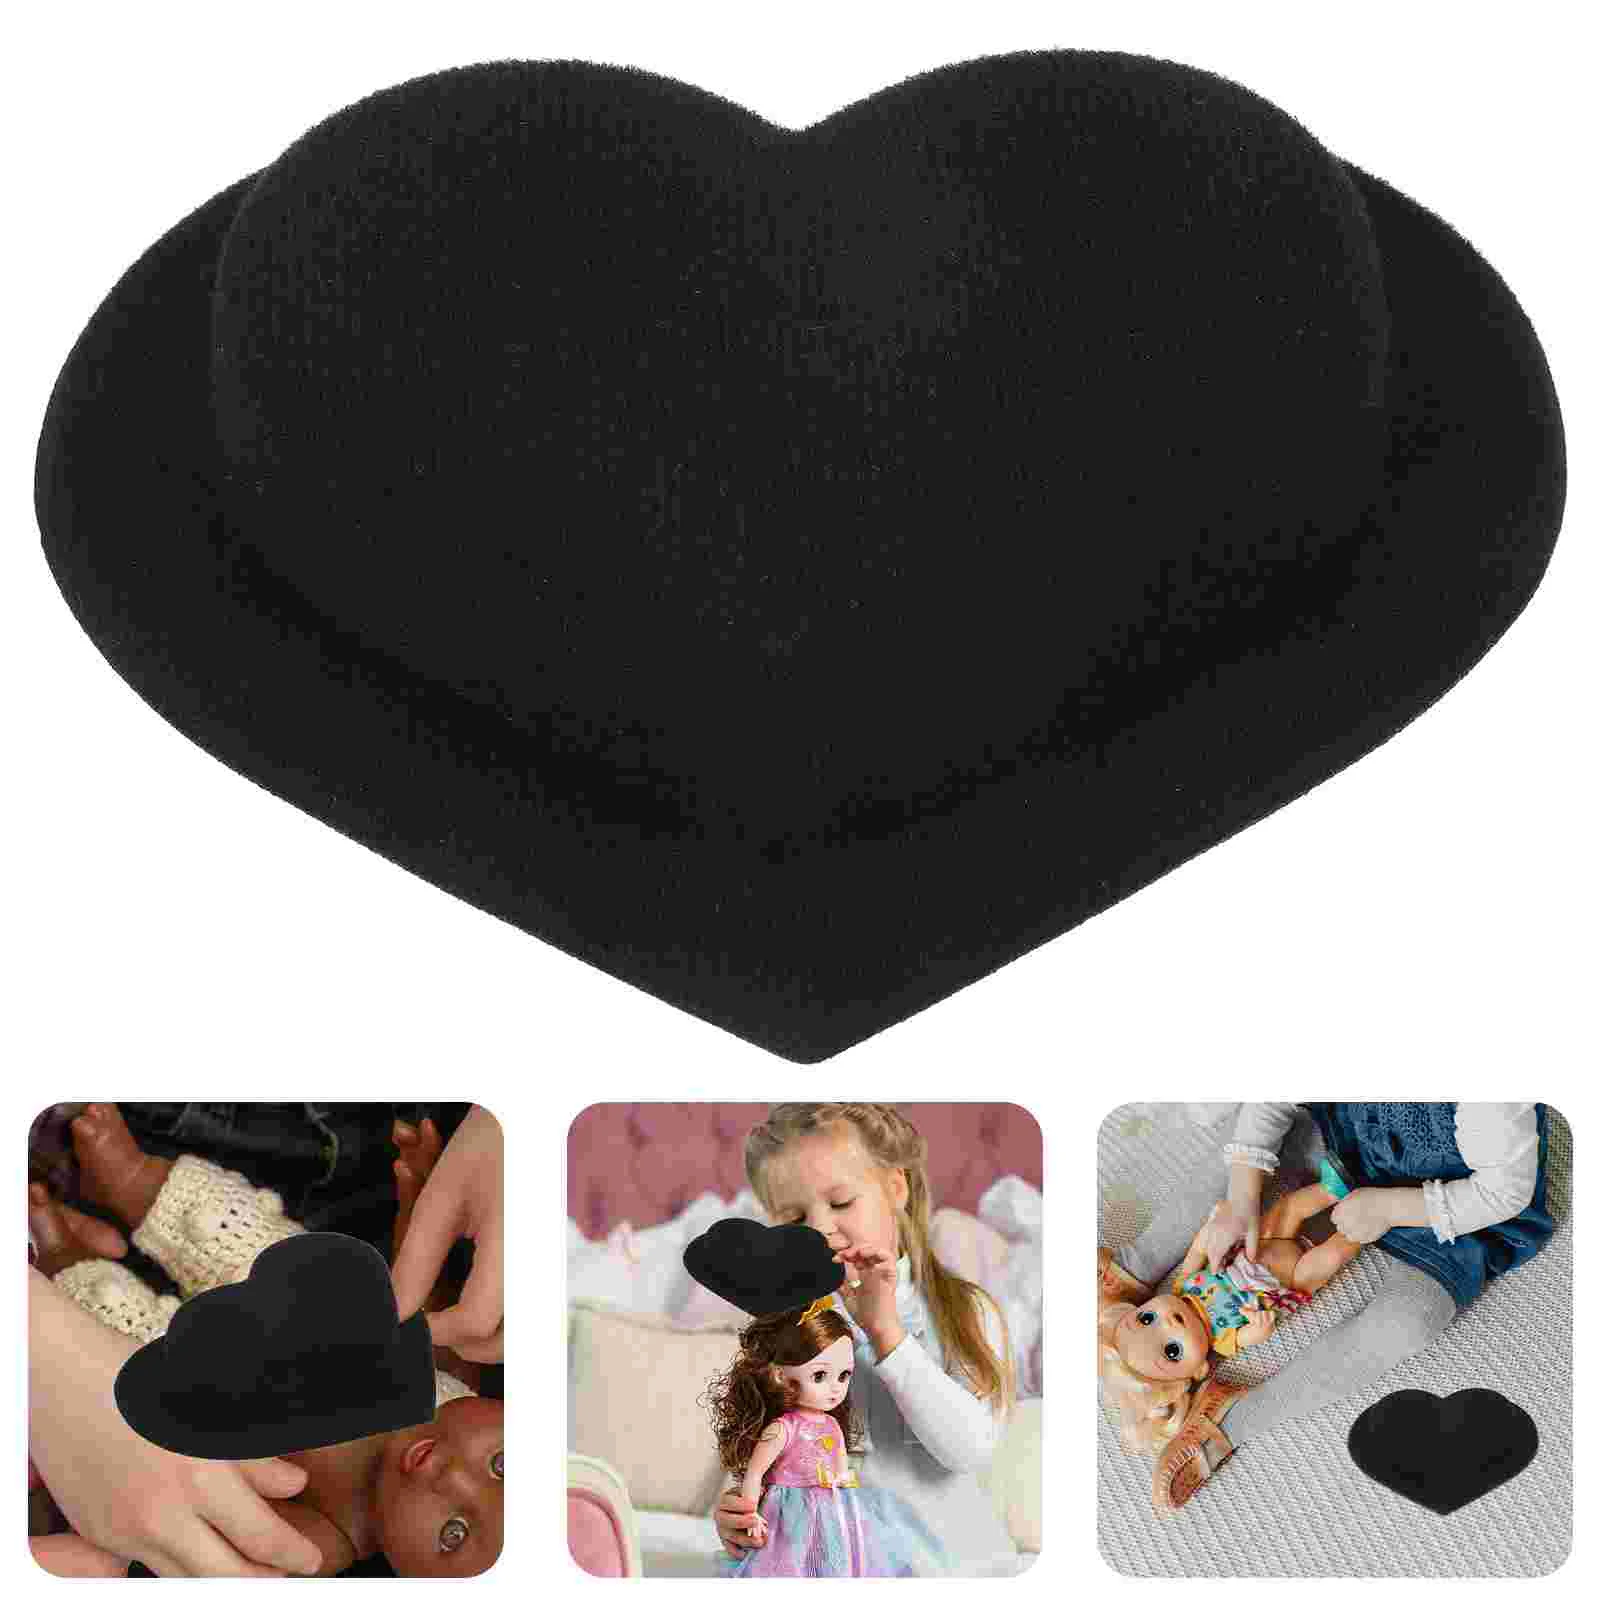 Шляпы в форме сердца, креативные мини-шляпы в стиле Лолиты с широкими полями, реквизит для фотосессии своими руками